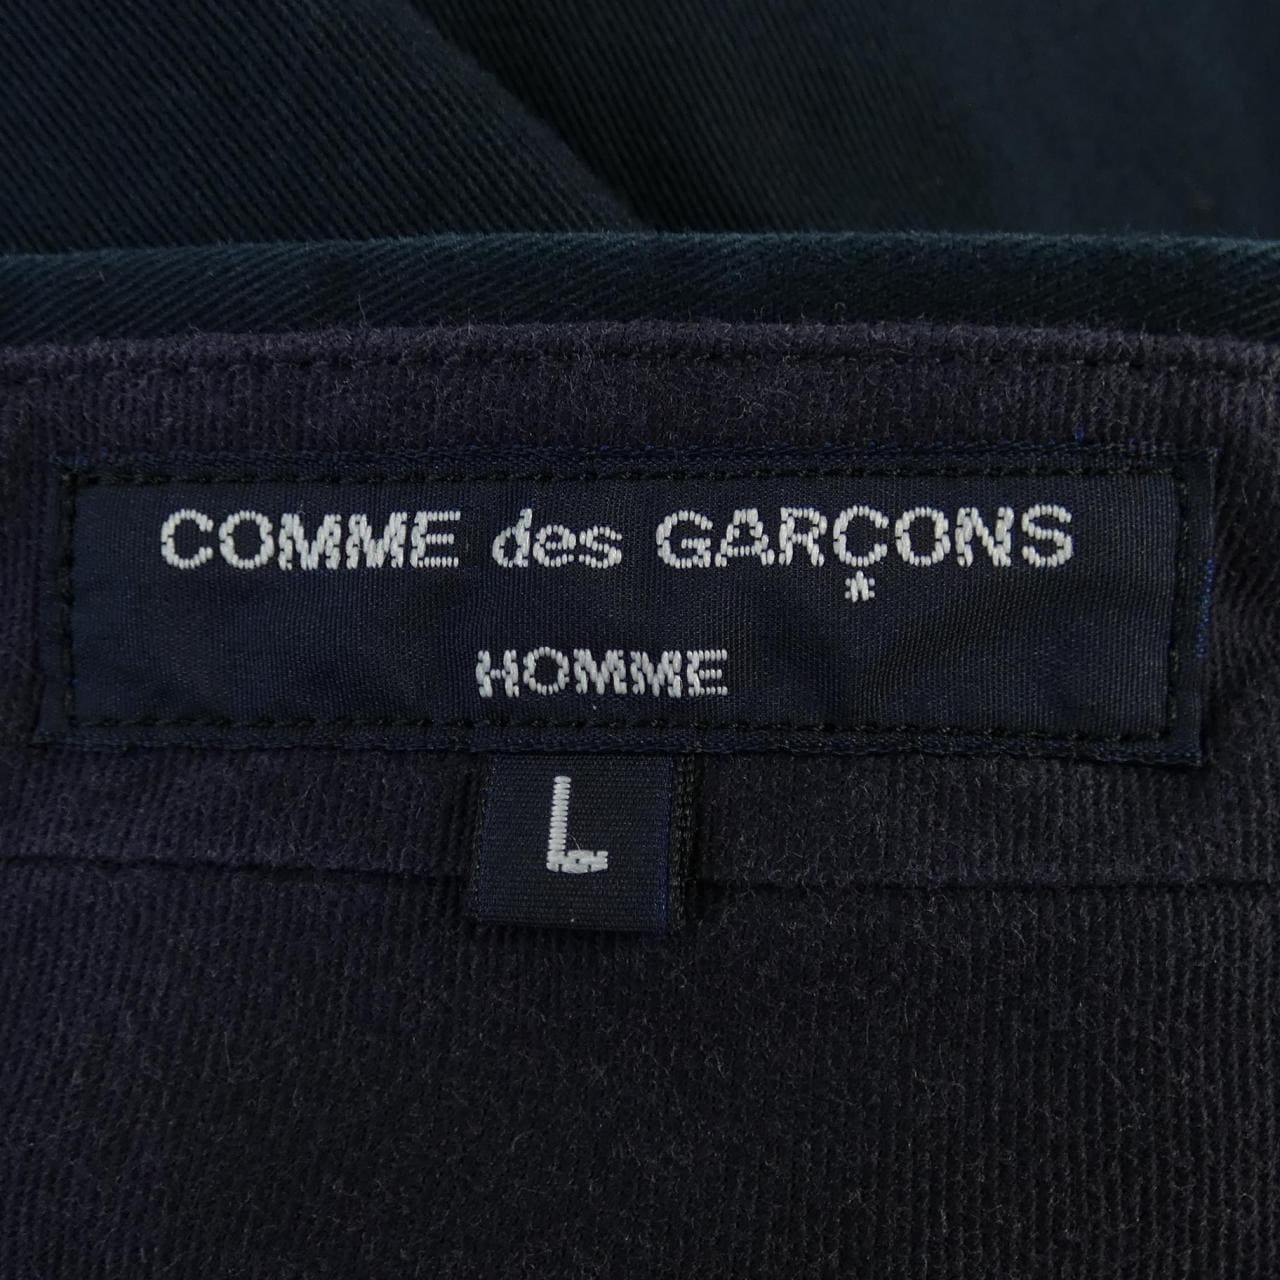 COMMME des GARCONS褲子